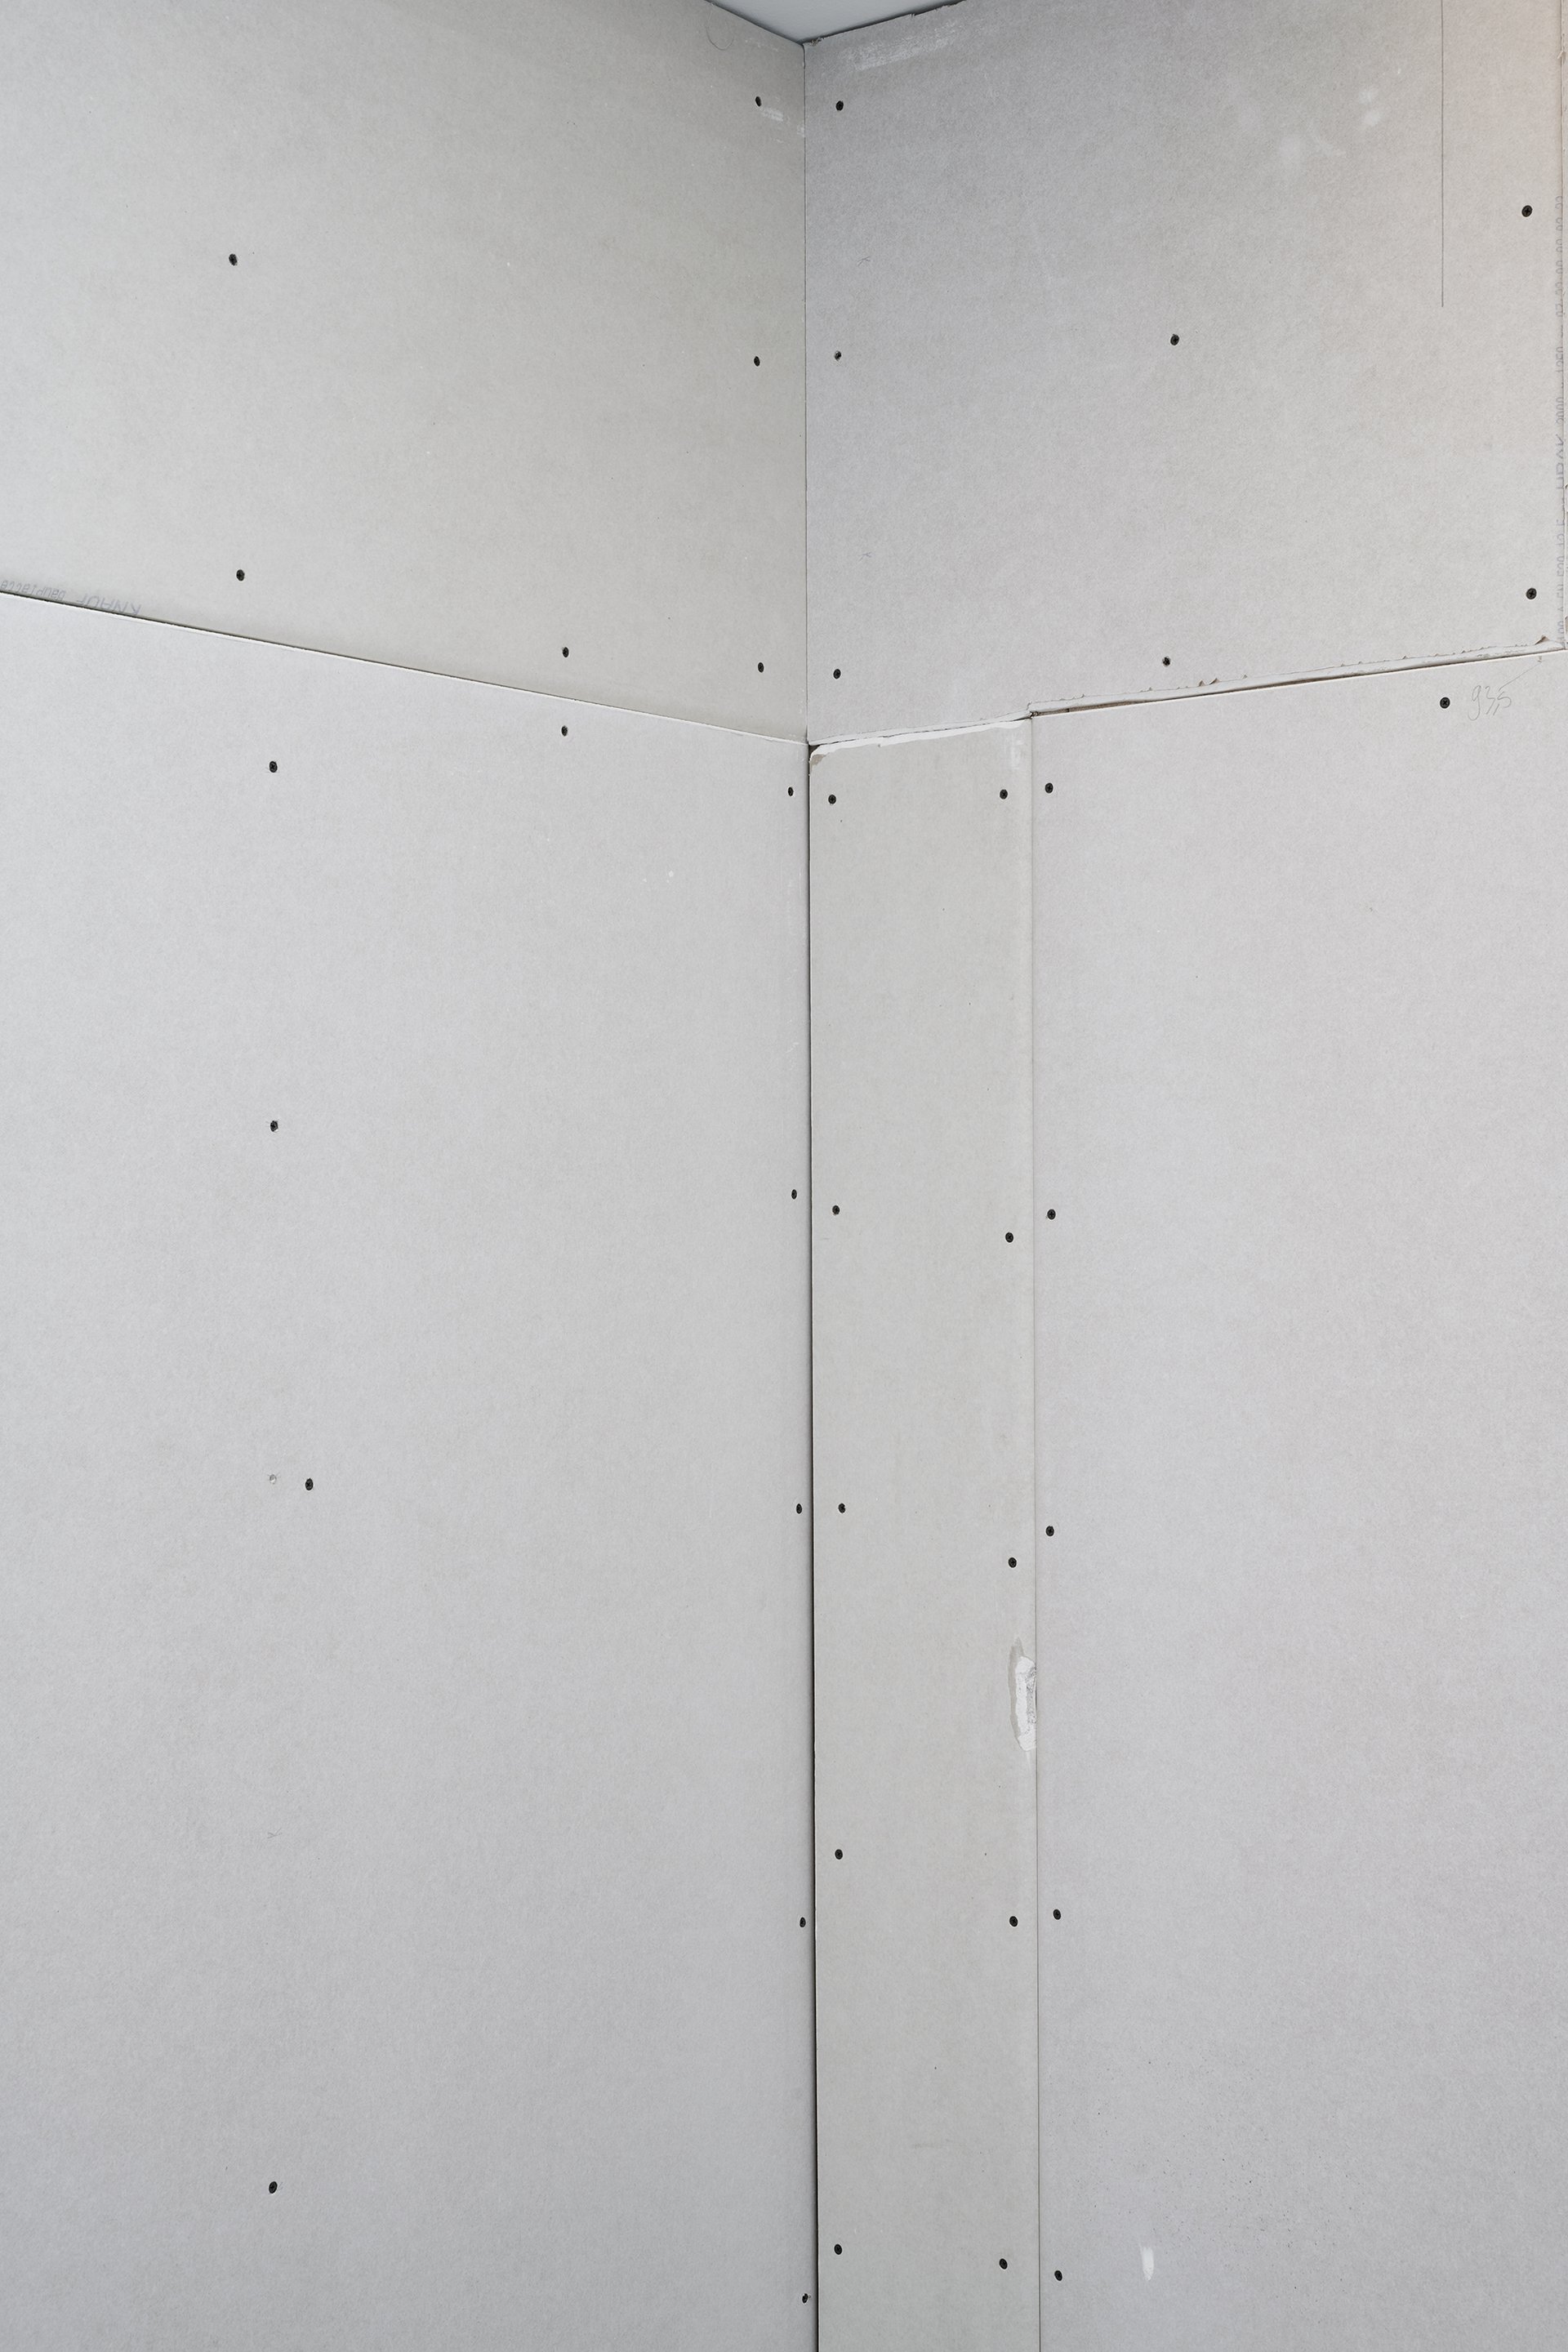 Jason Hirata, Cigarettes and chips in the dark, 2021 – 2022, Installationsansicht (Detail), Bonner Kunstverein, 2022. Courtesy der Künstler. Foto: Mareike Tocha.